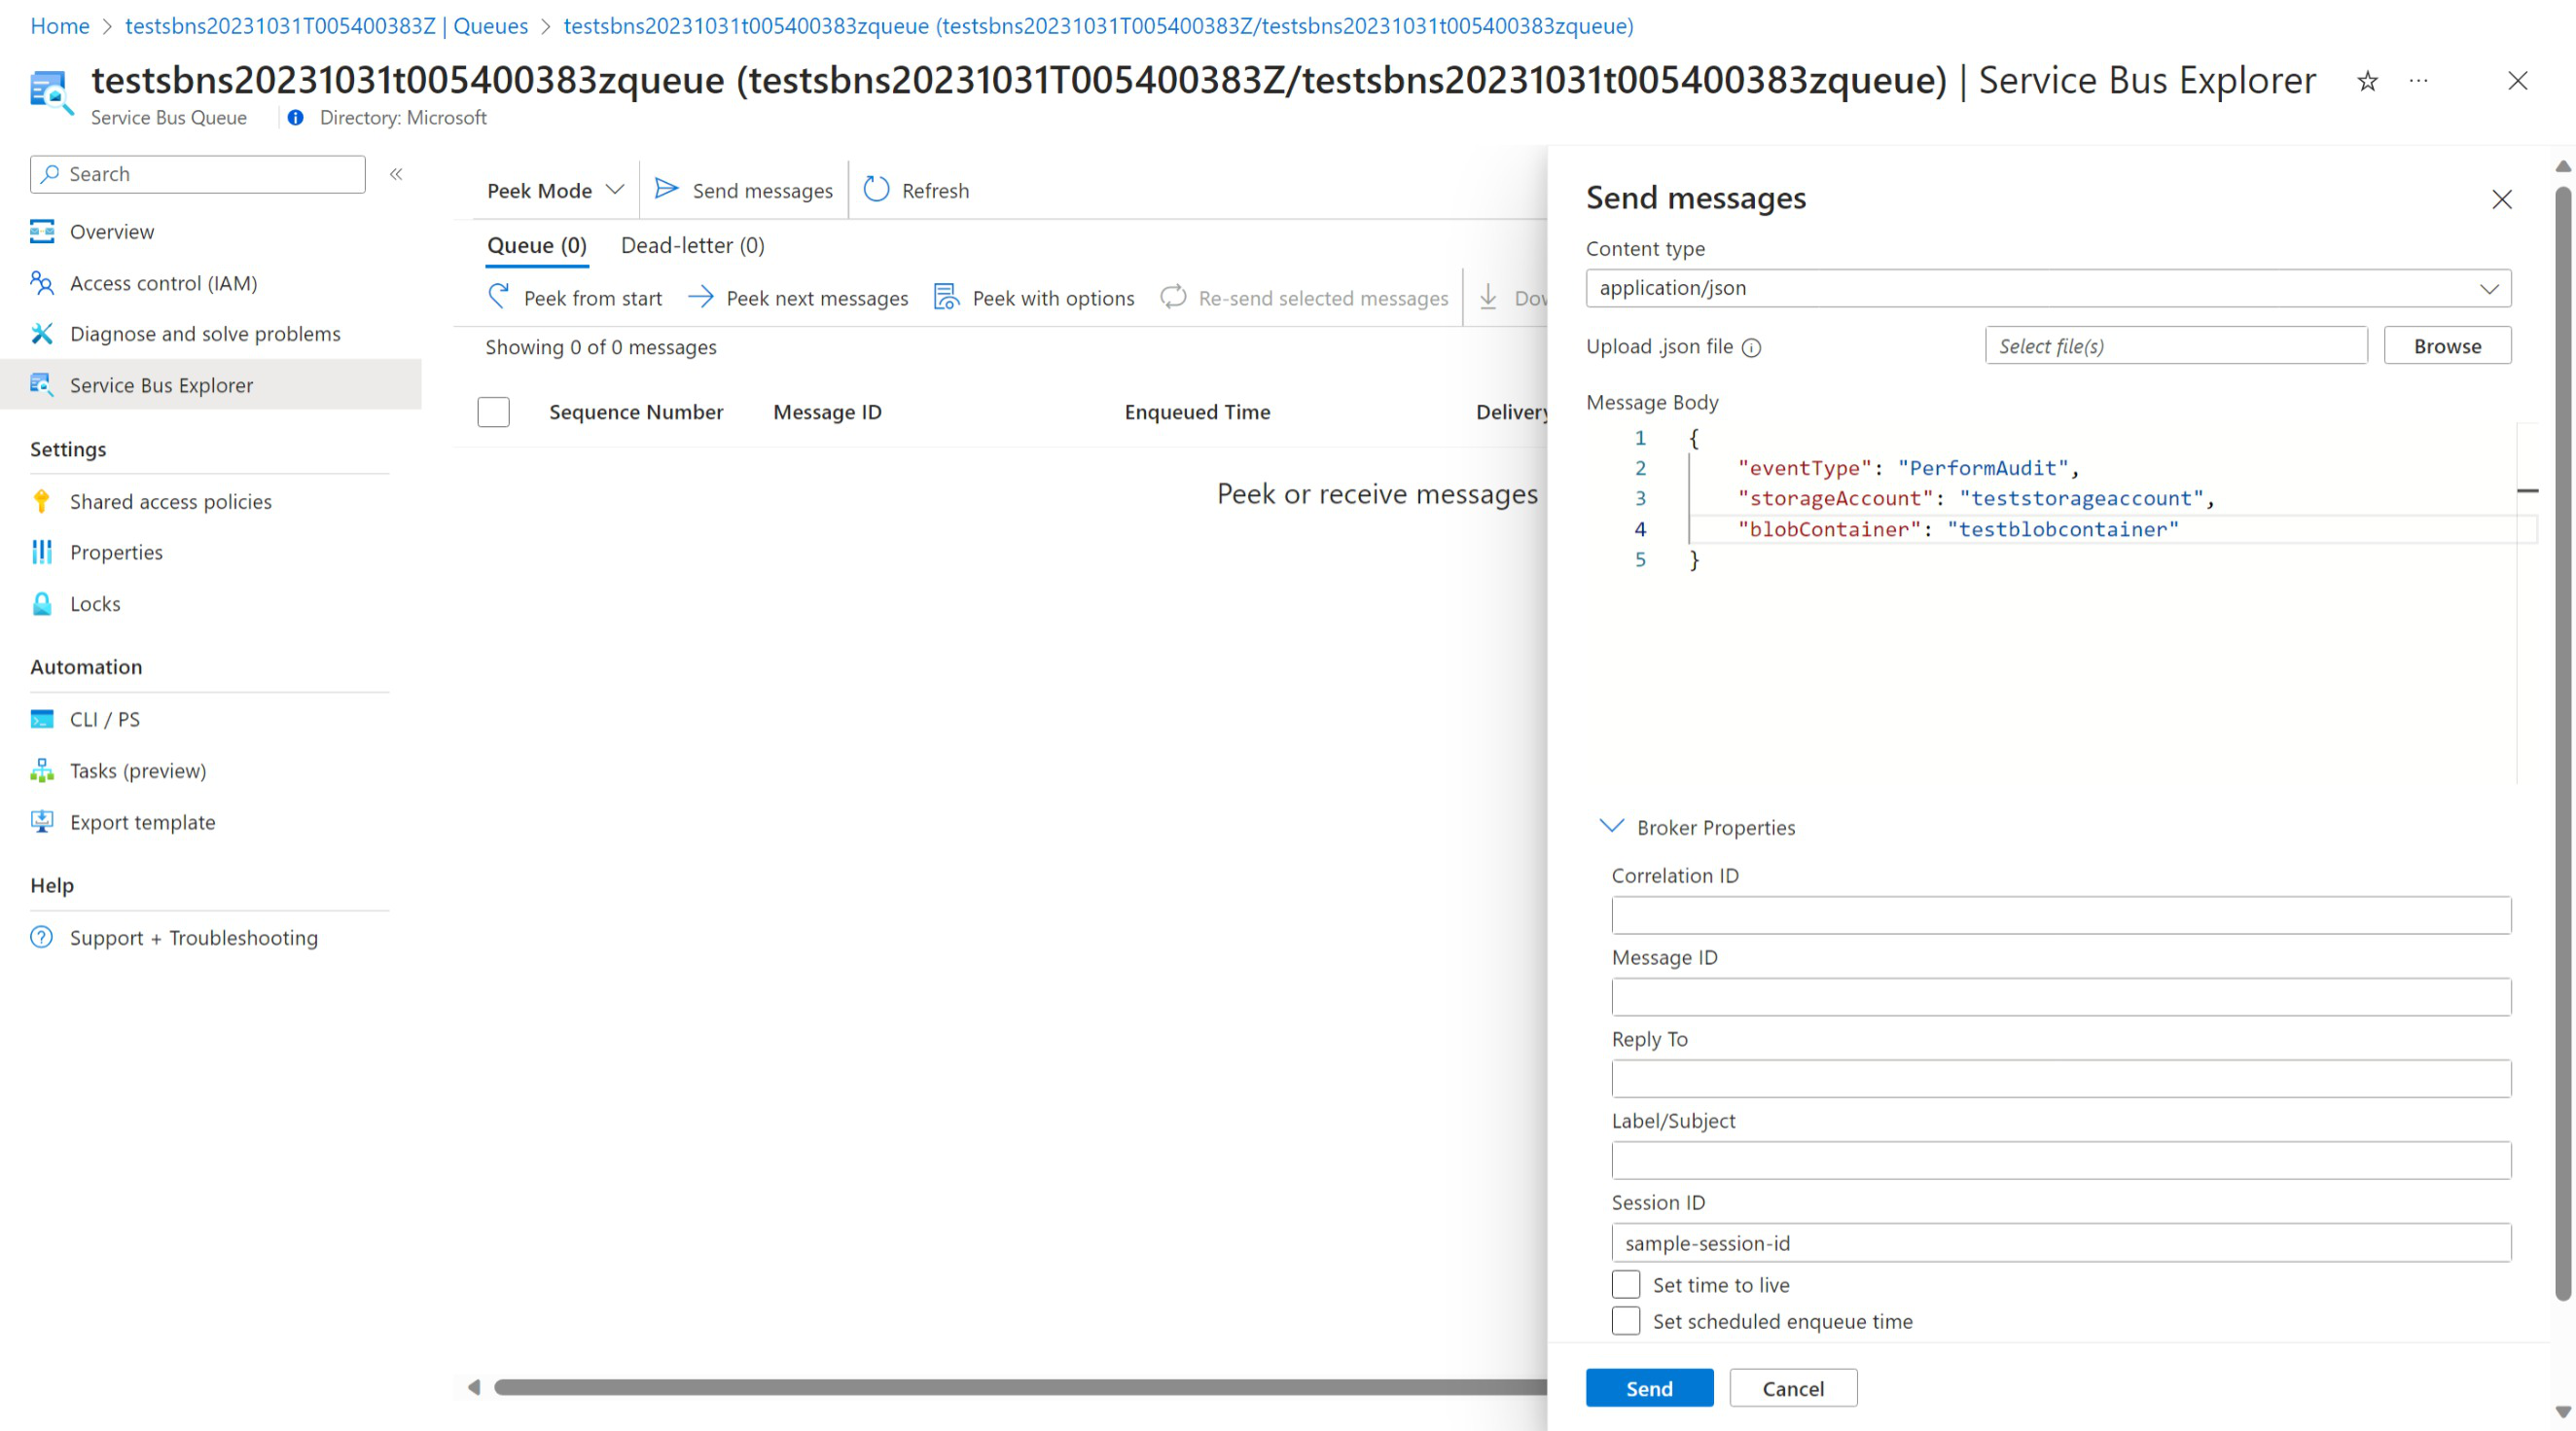 Capture d’écran du portail Azure dans un navigateur web, comment déclencher un audit en ajoutant un message à la file d’attente.